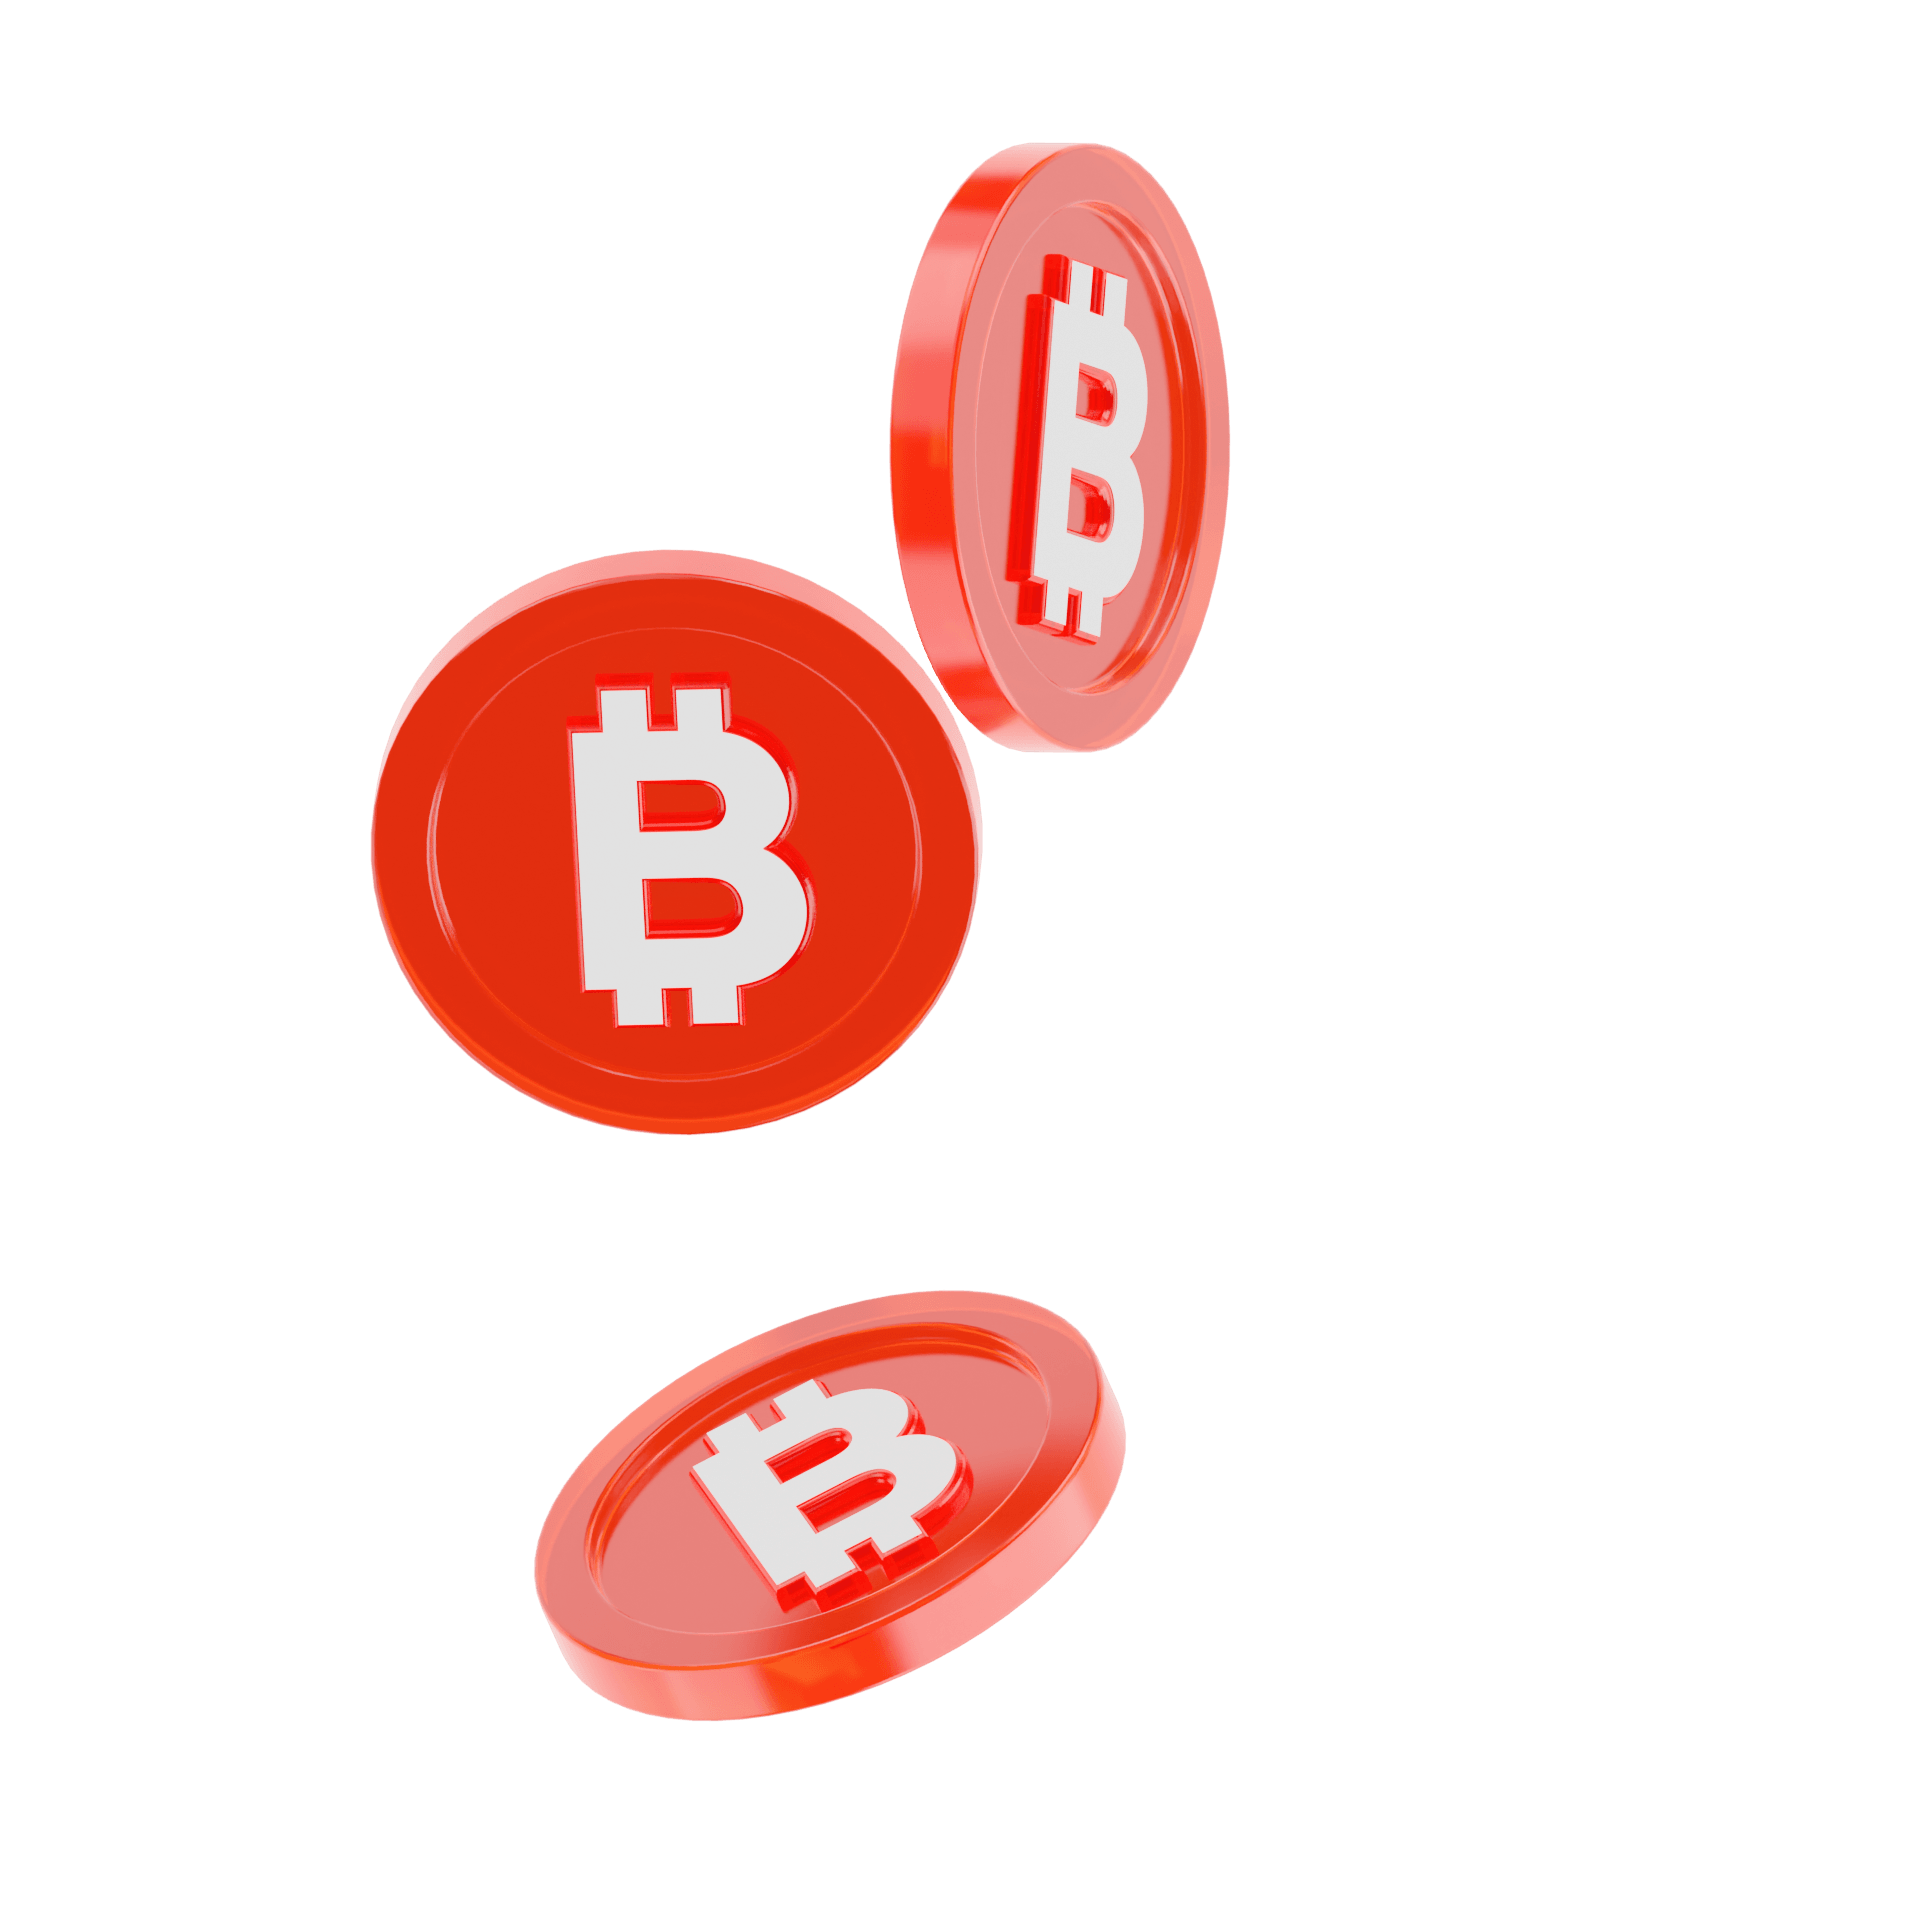 Bitcoin crypto coins